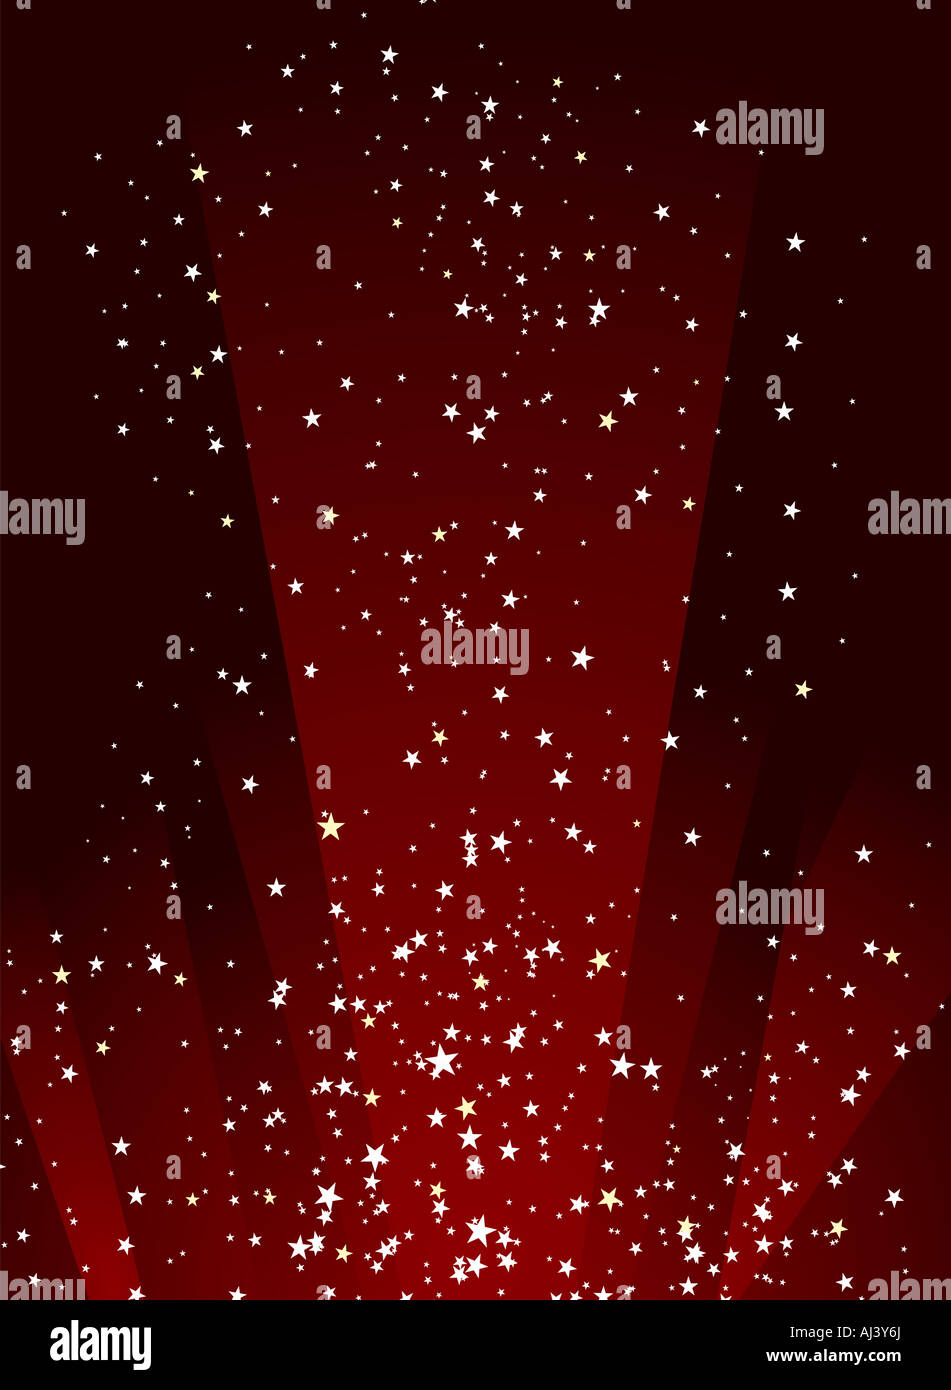 Nuit étoilée illustré en couleur rouge et noir avec les phares de recherche Banque D'Images